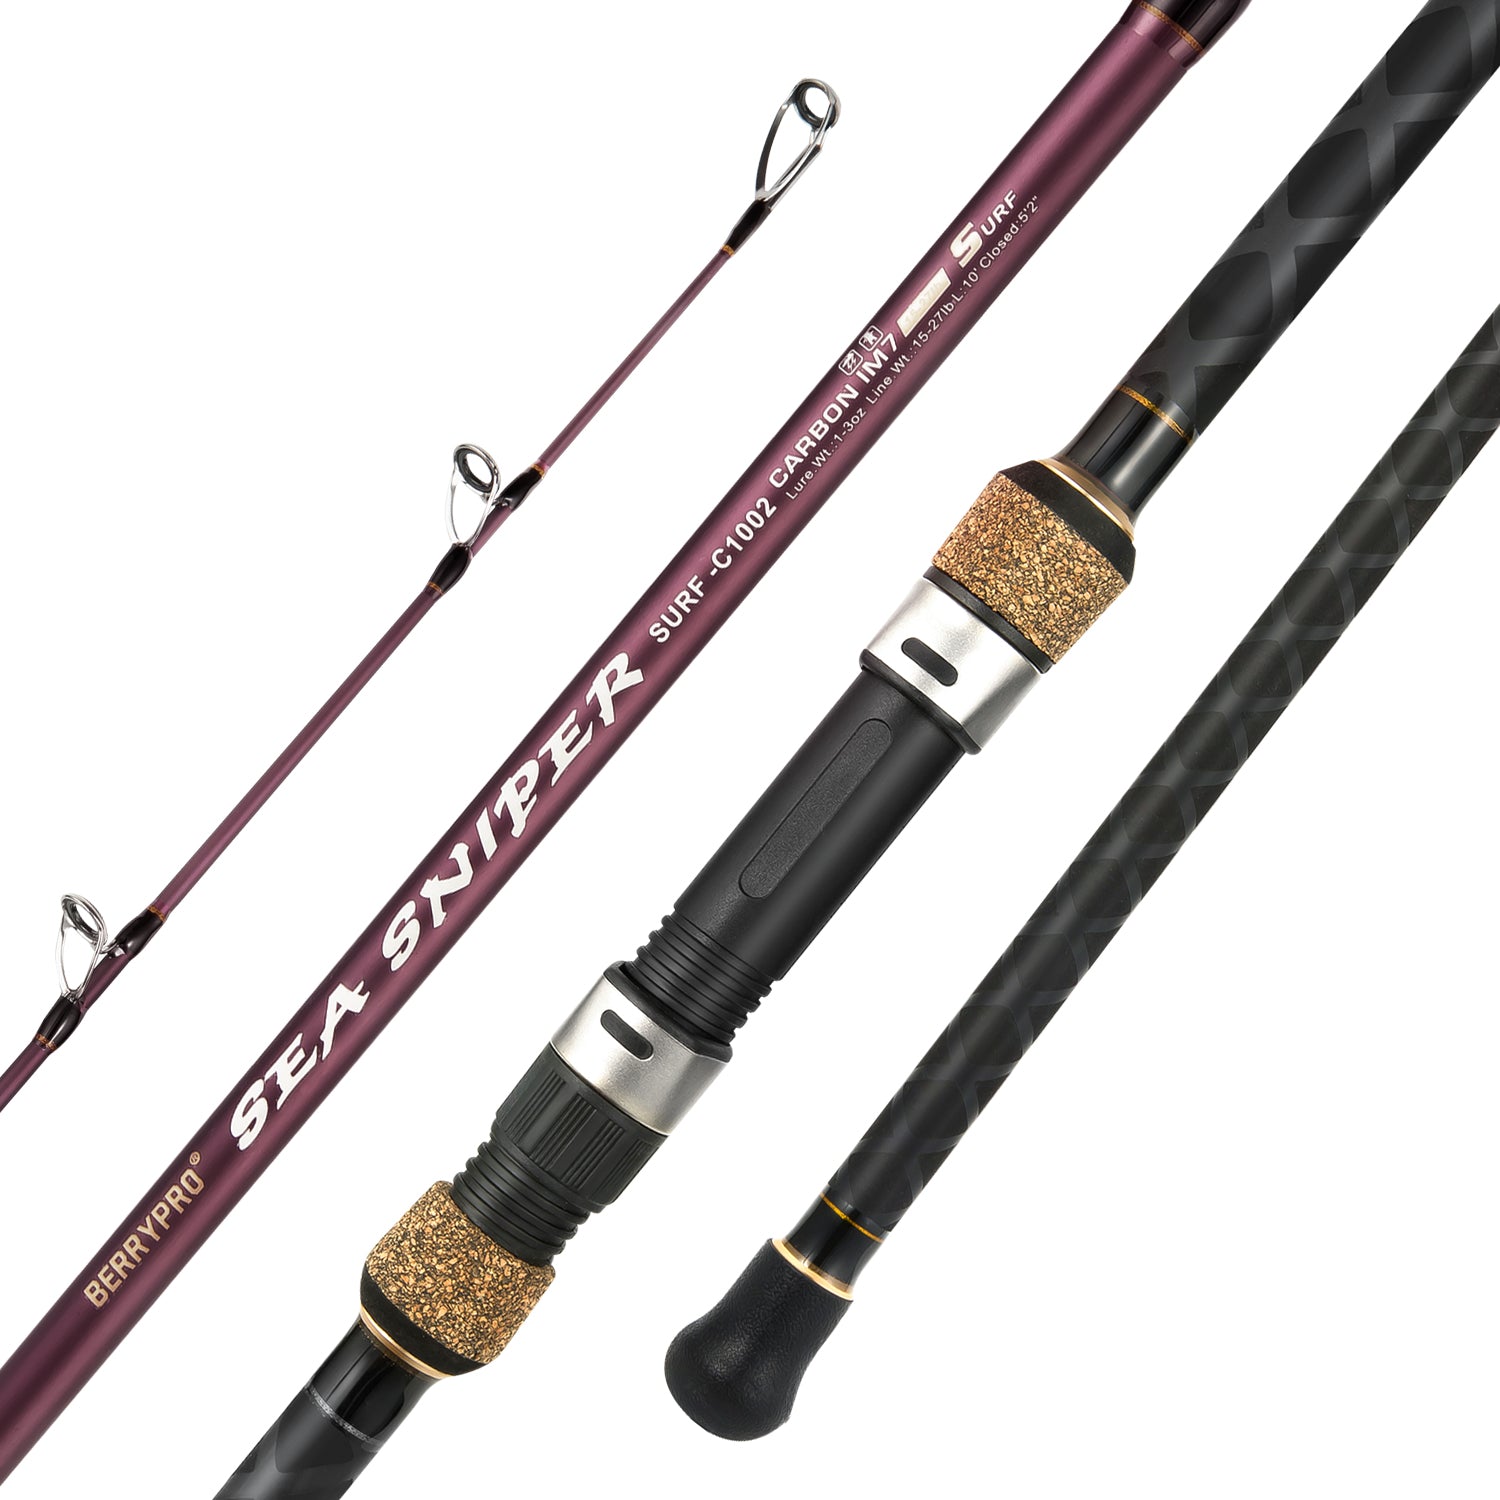 Buy Berrypro Ultralight Spinning Fishing Rod, Travel Spinning Rod